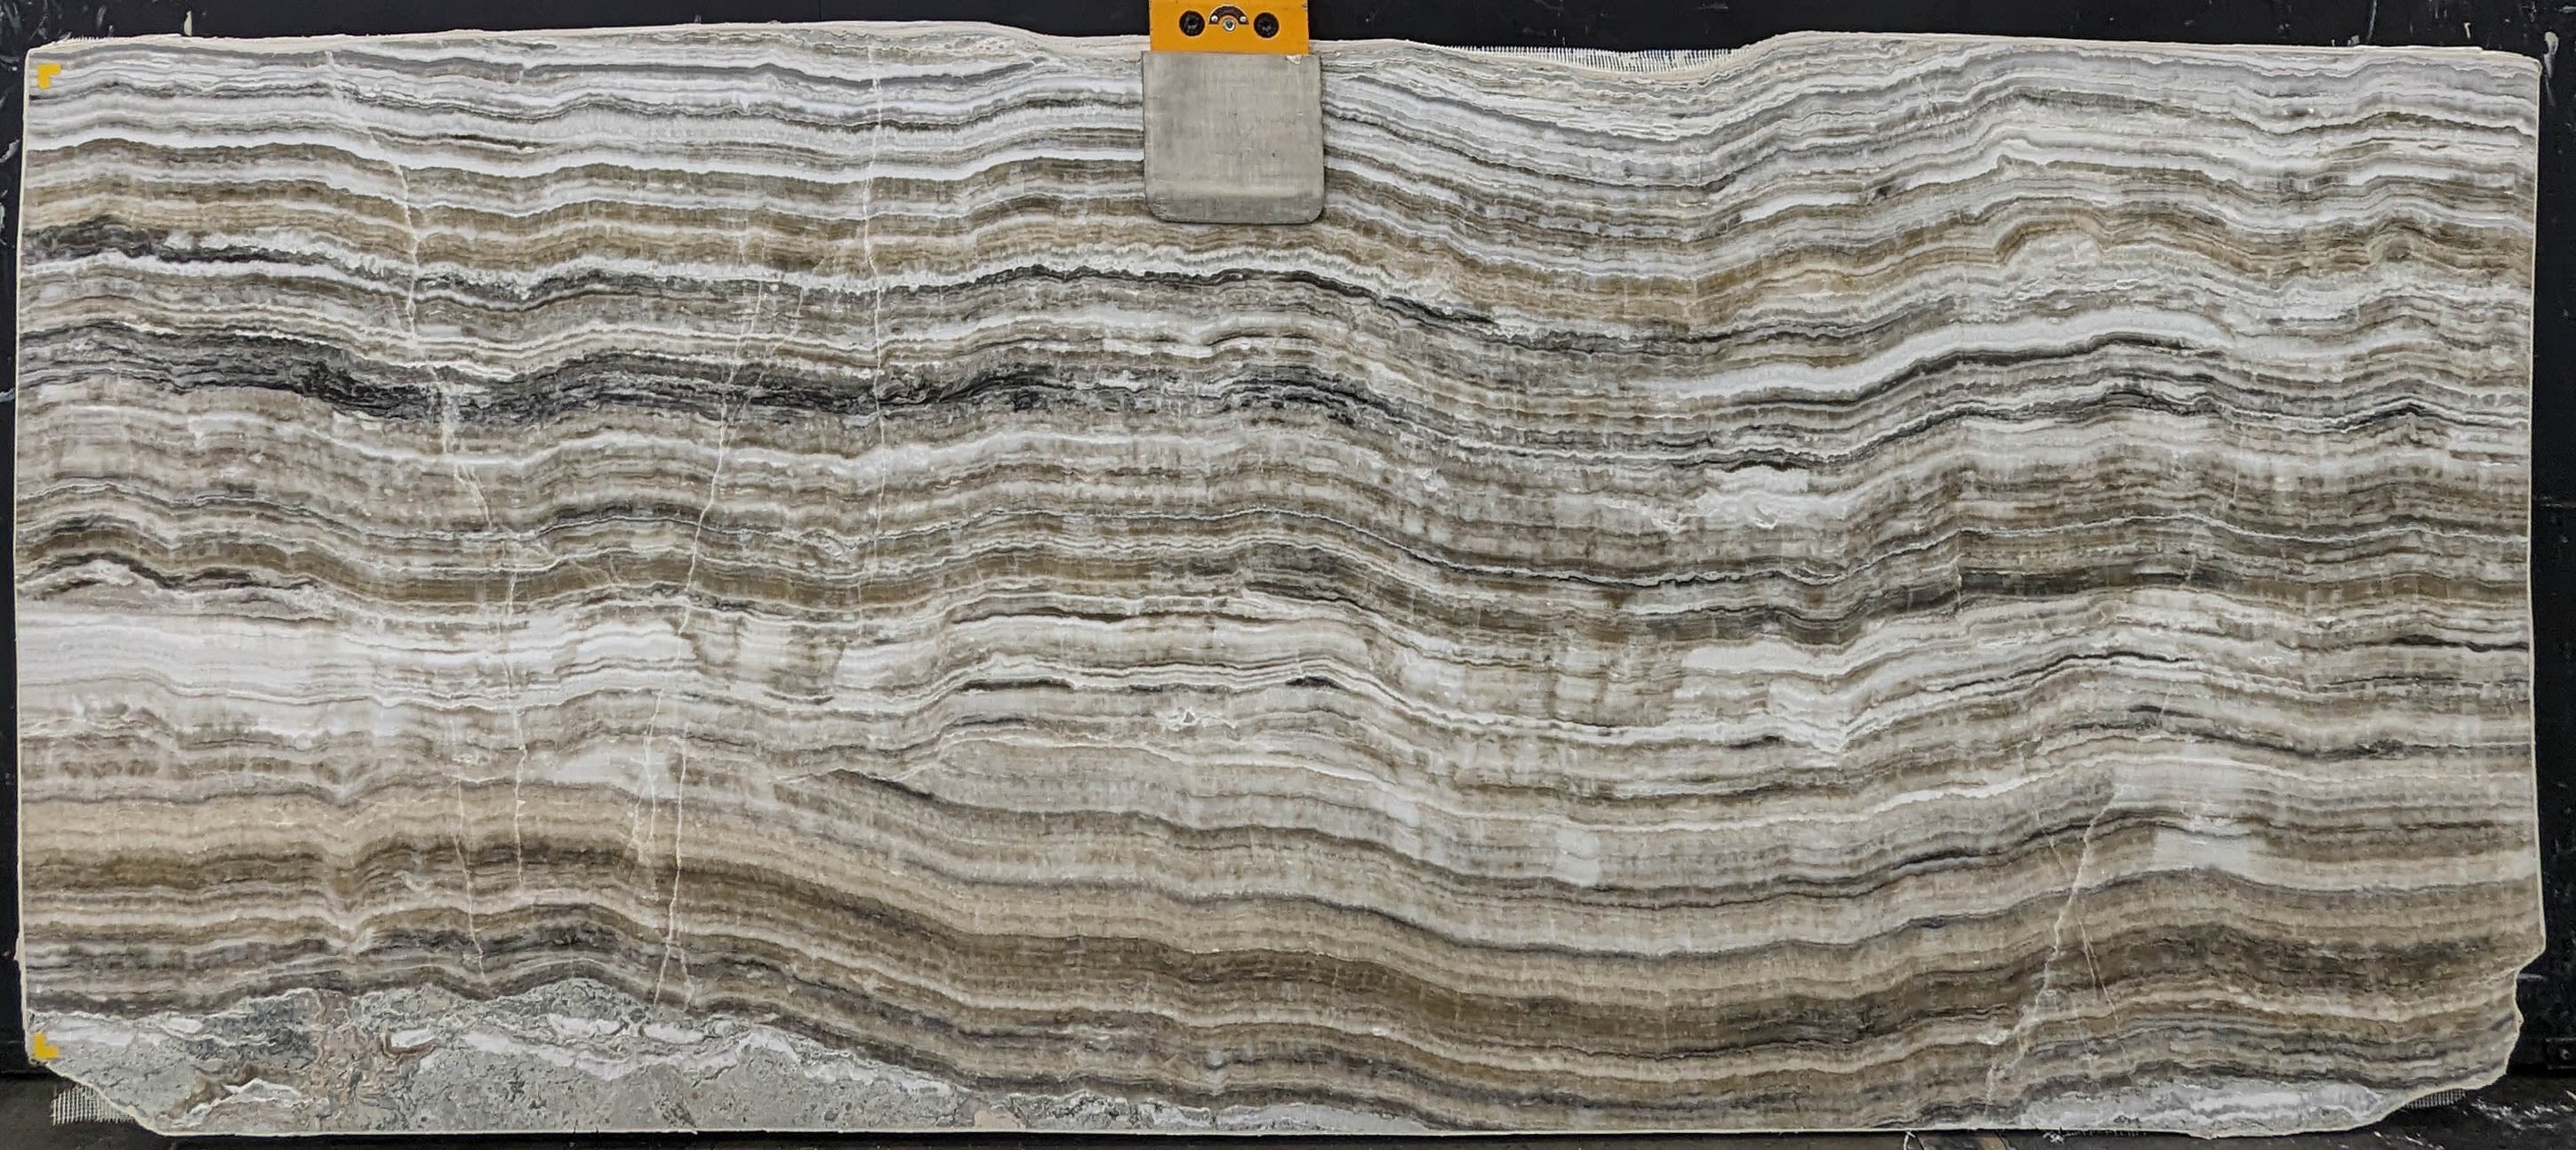  Grey Onyx Slab 3/4  Polished Stone - KM22521#60 -  45x114 